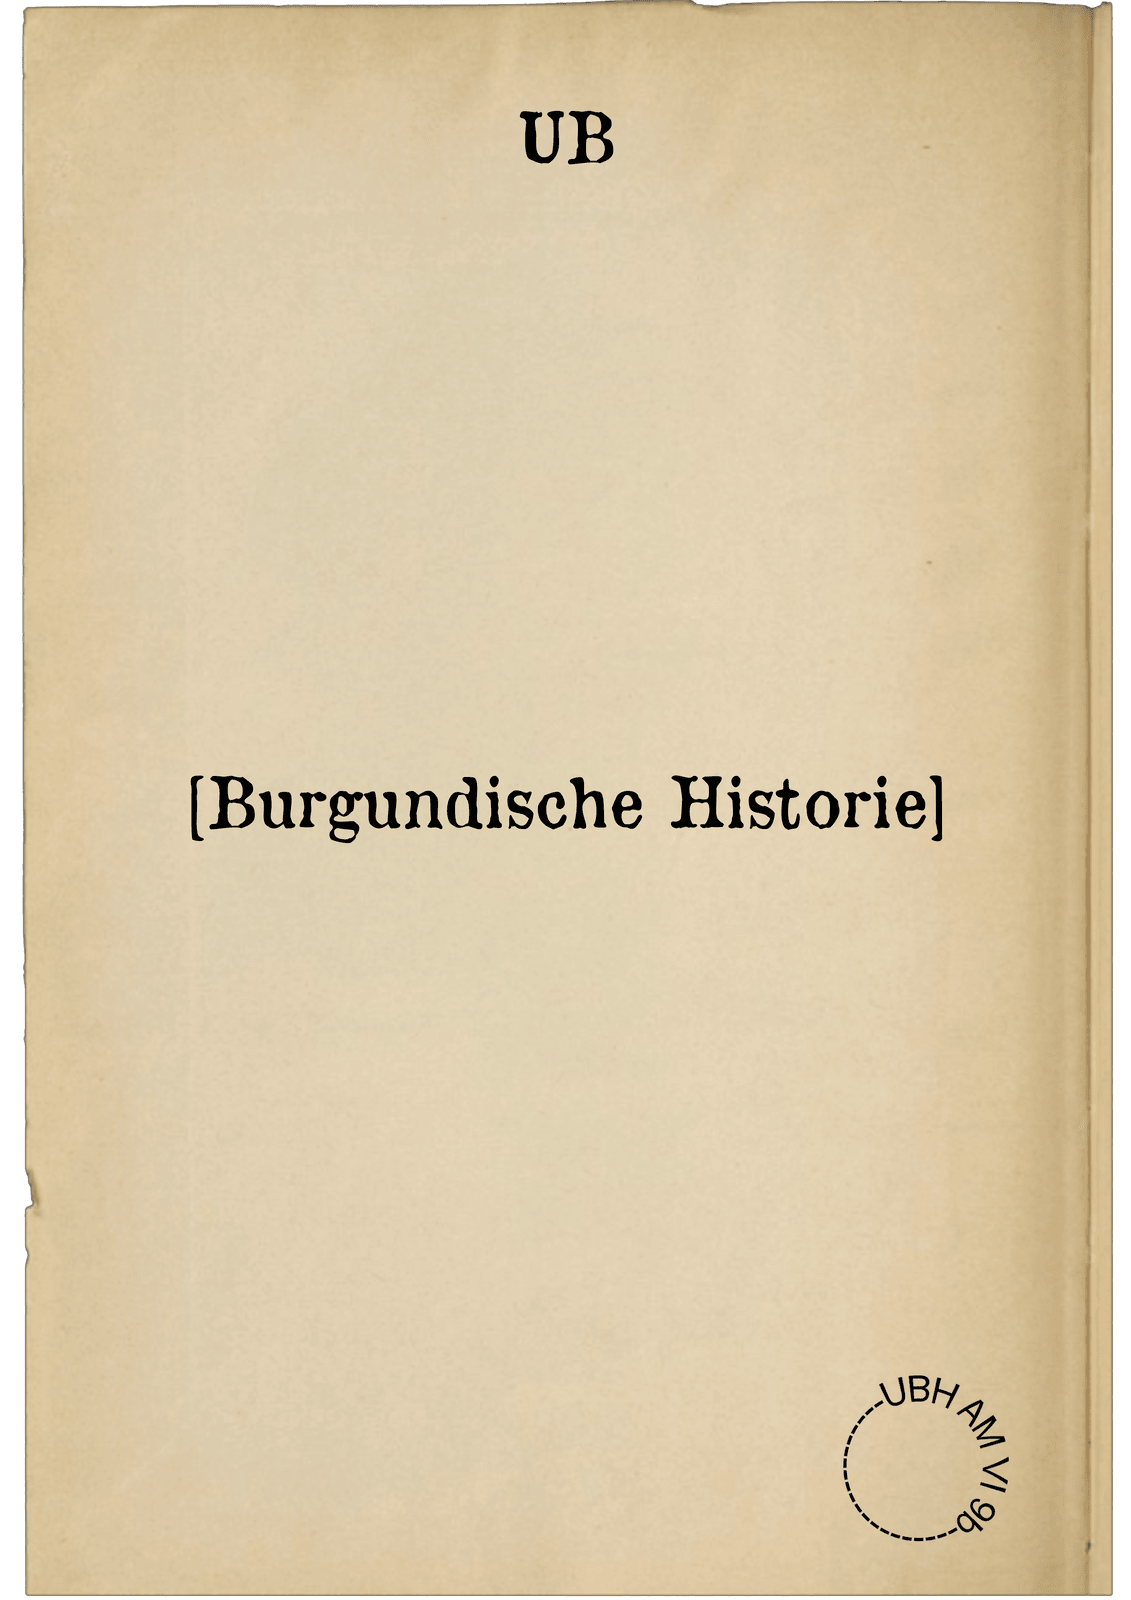 [Burgundische Historie]